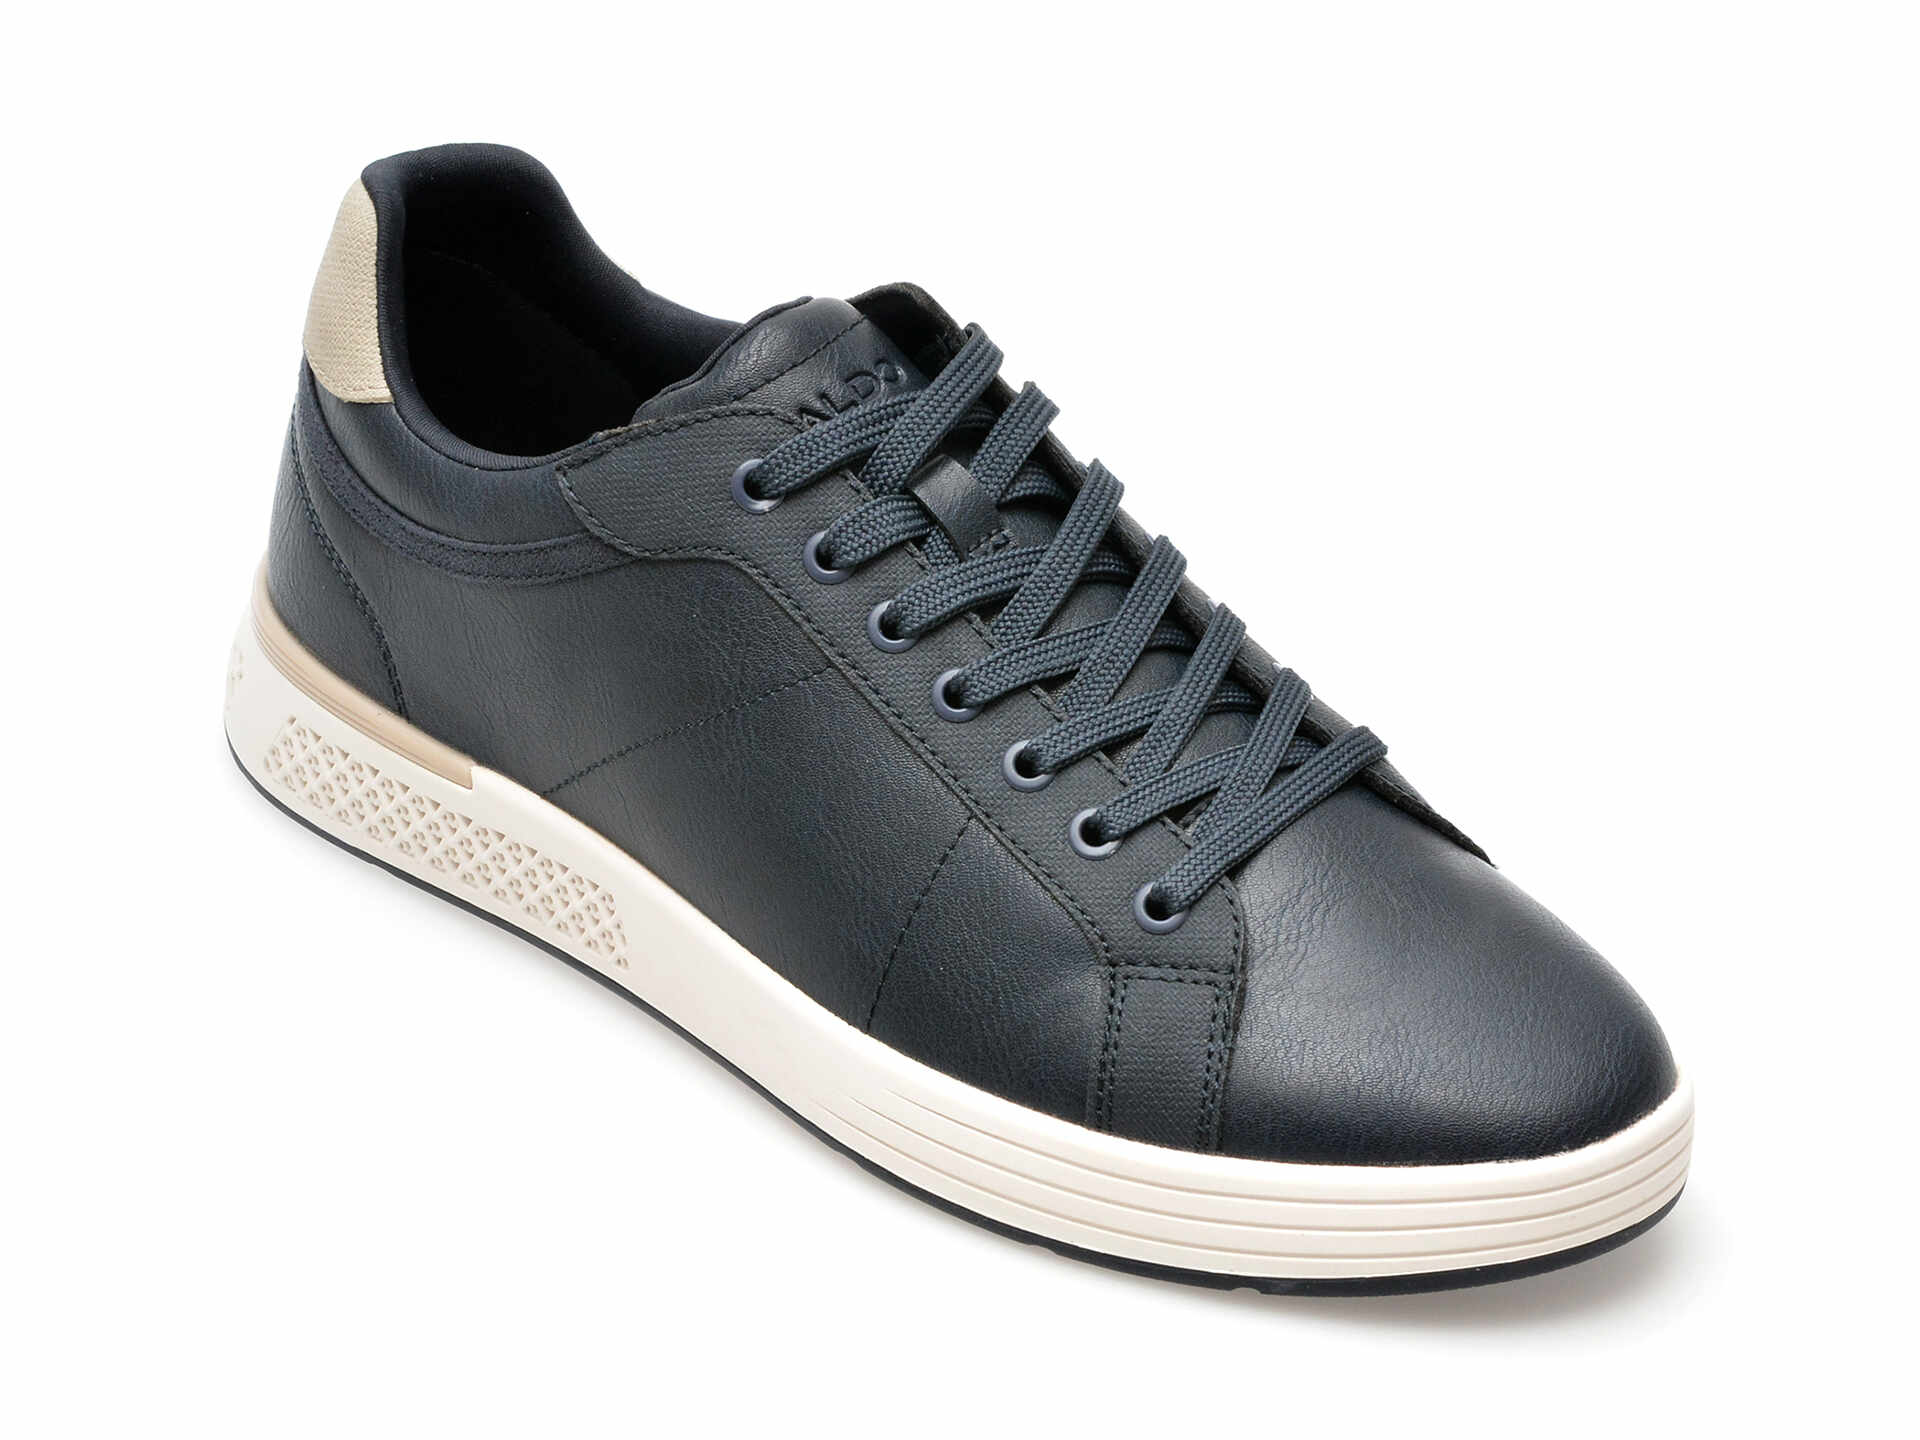 Pantofi casual ALDO bleumarin, 13538196, din piele ecologica